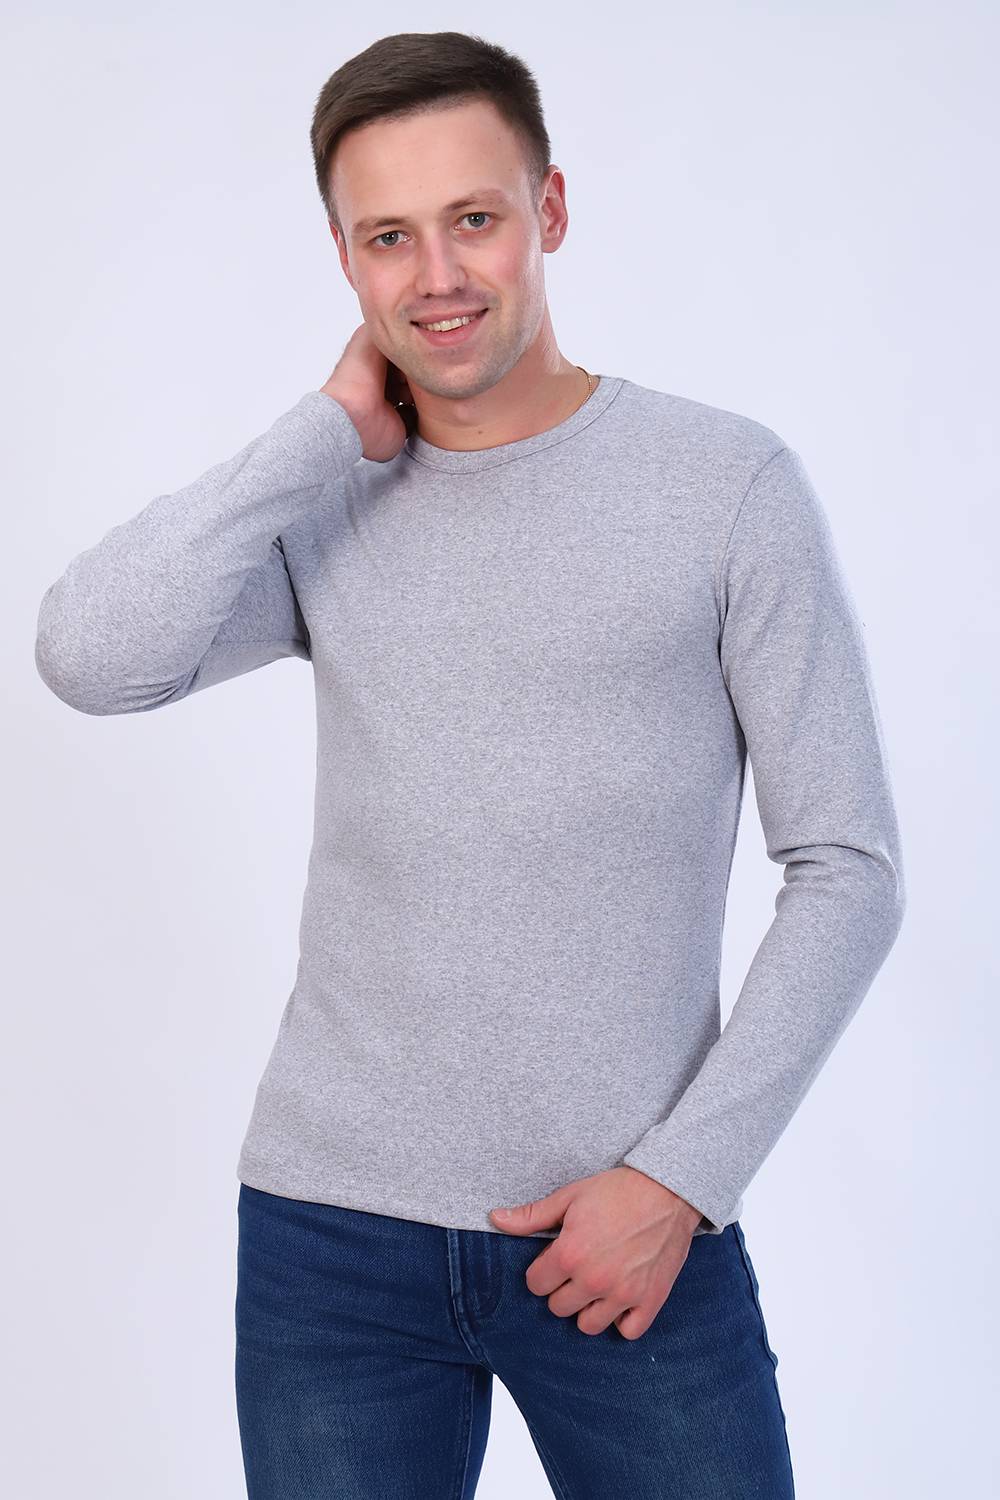 С чем носить мужской пуловер? идеи + подборка вещей ( 11 фото )